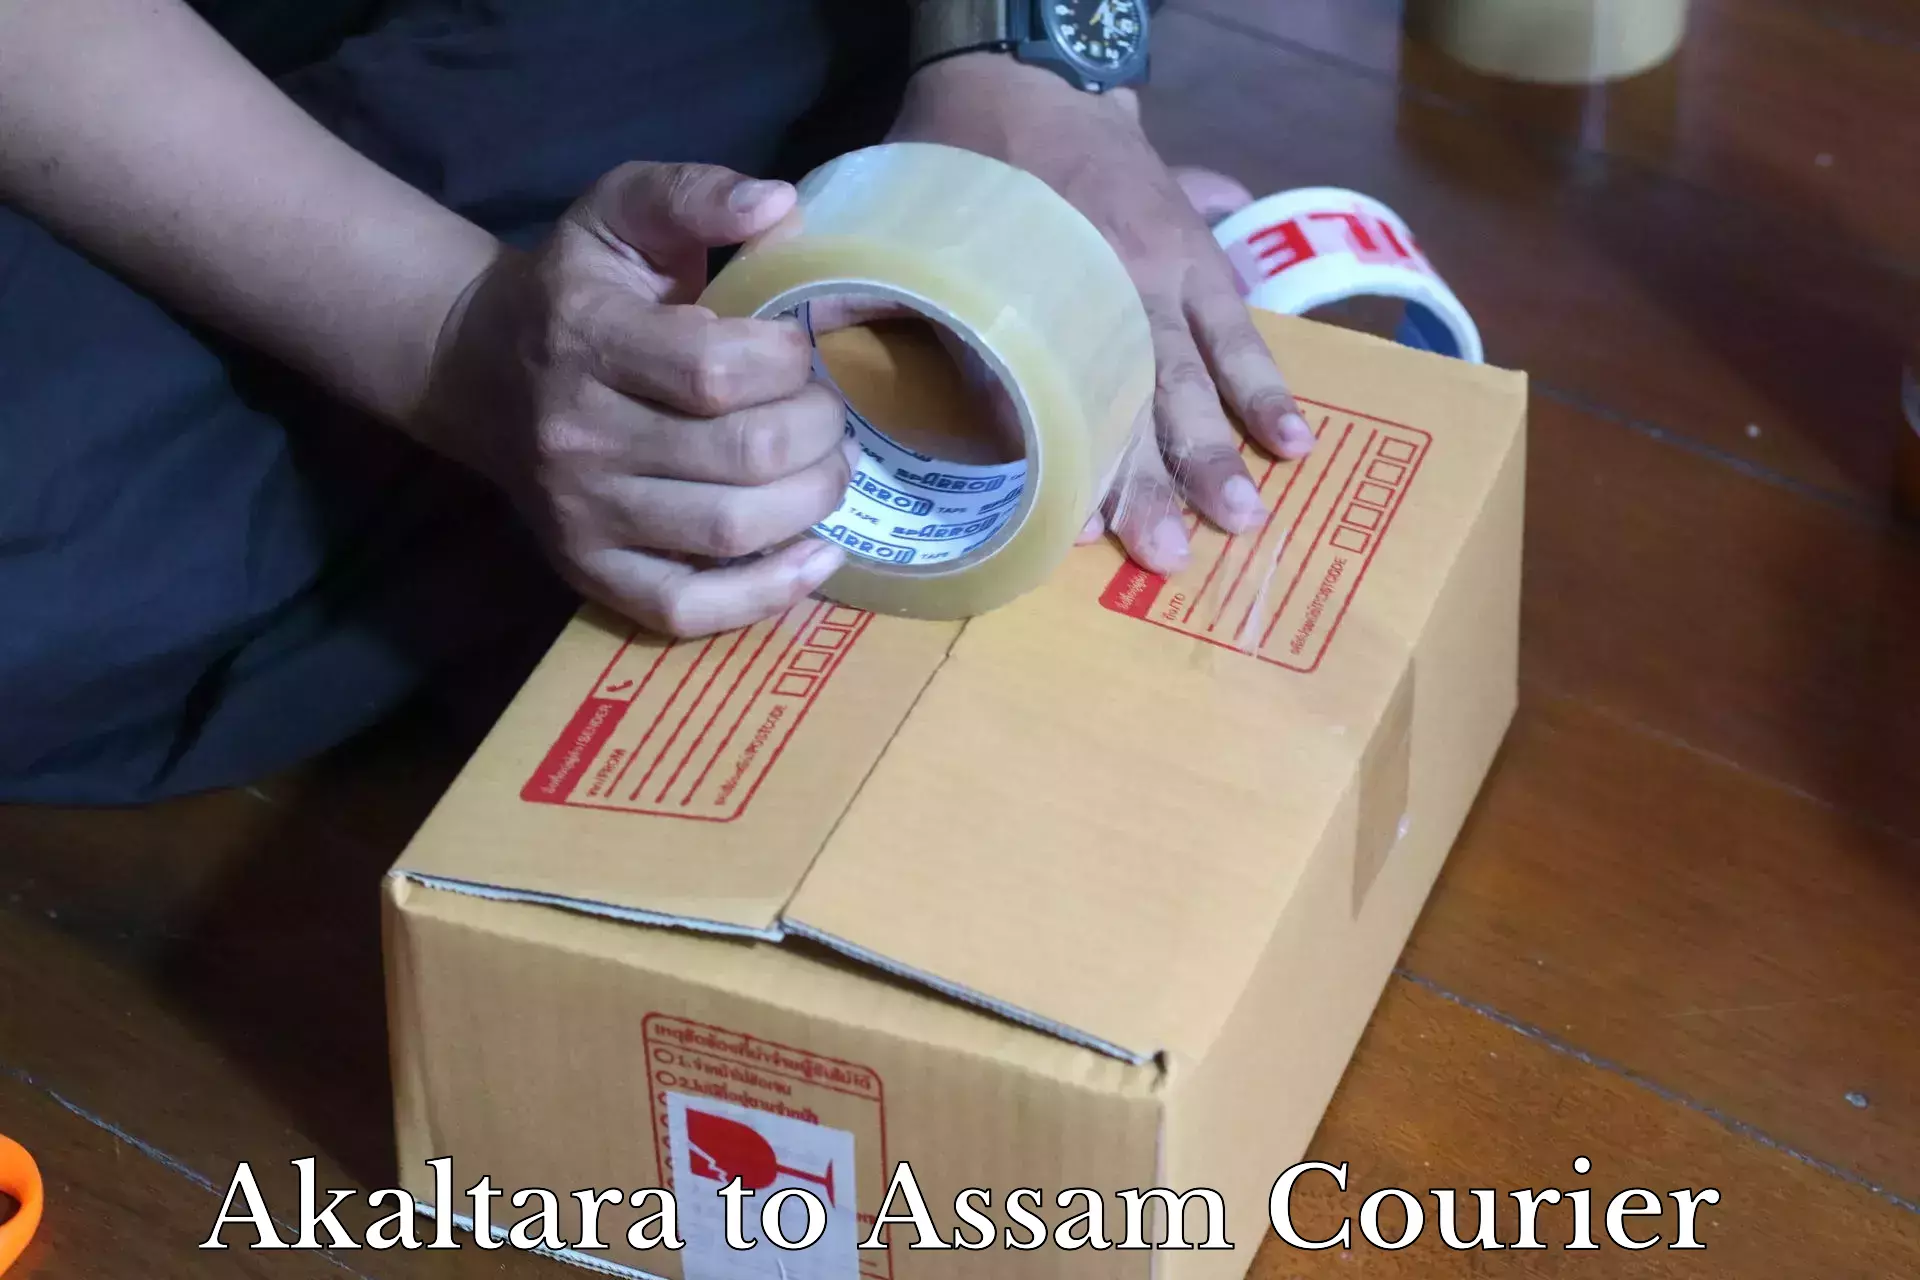 Efficient freight service Akaltara to Assam